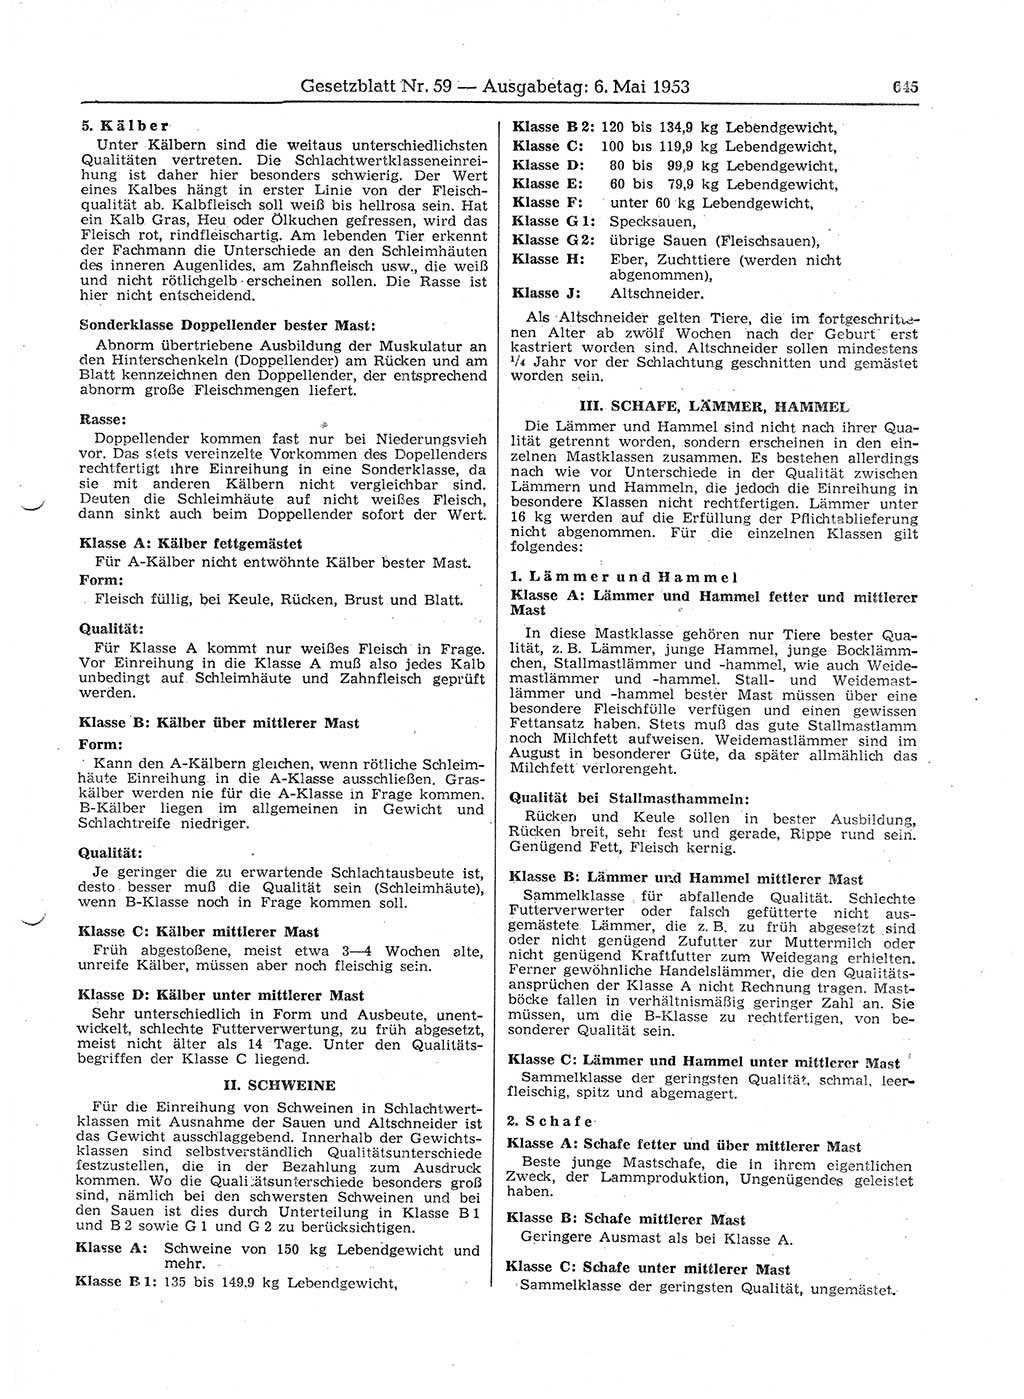 Gesetzblatt (GBl.) der Deutschen Demokratischen Republik (DDR) 1953, Seite 645 (GBl. DDR 1953, S. 645)